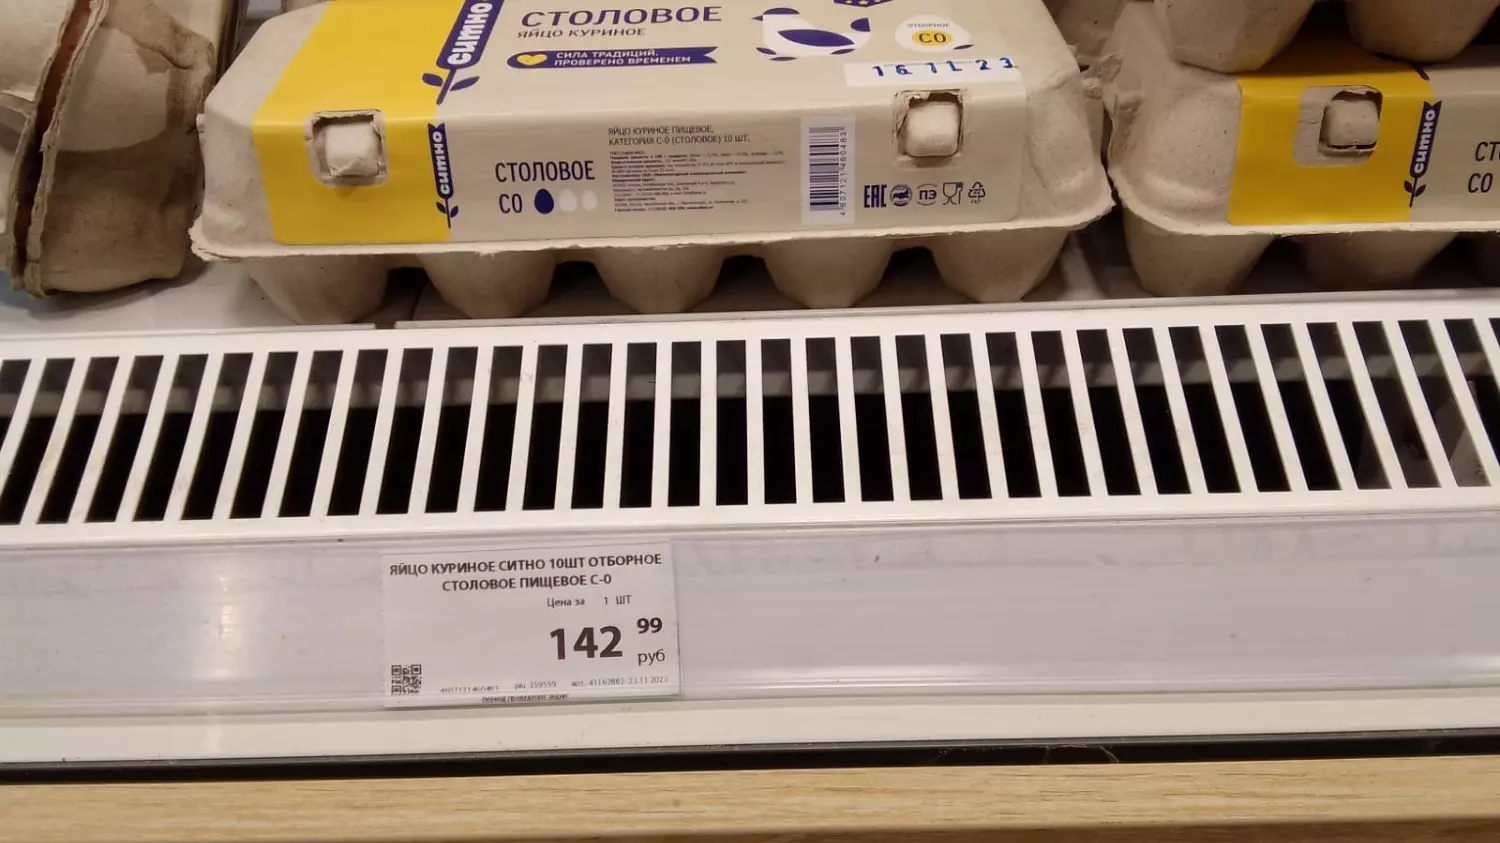 Яйца С0 стоят в челябинском магазине 142, 99 рубля